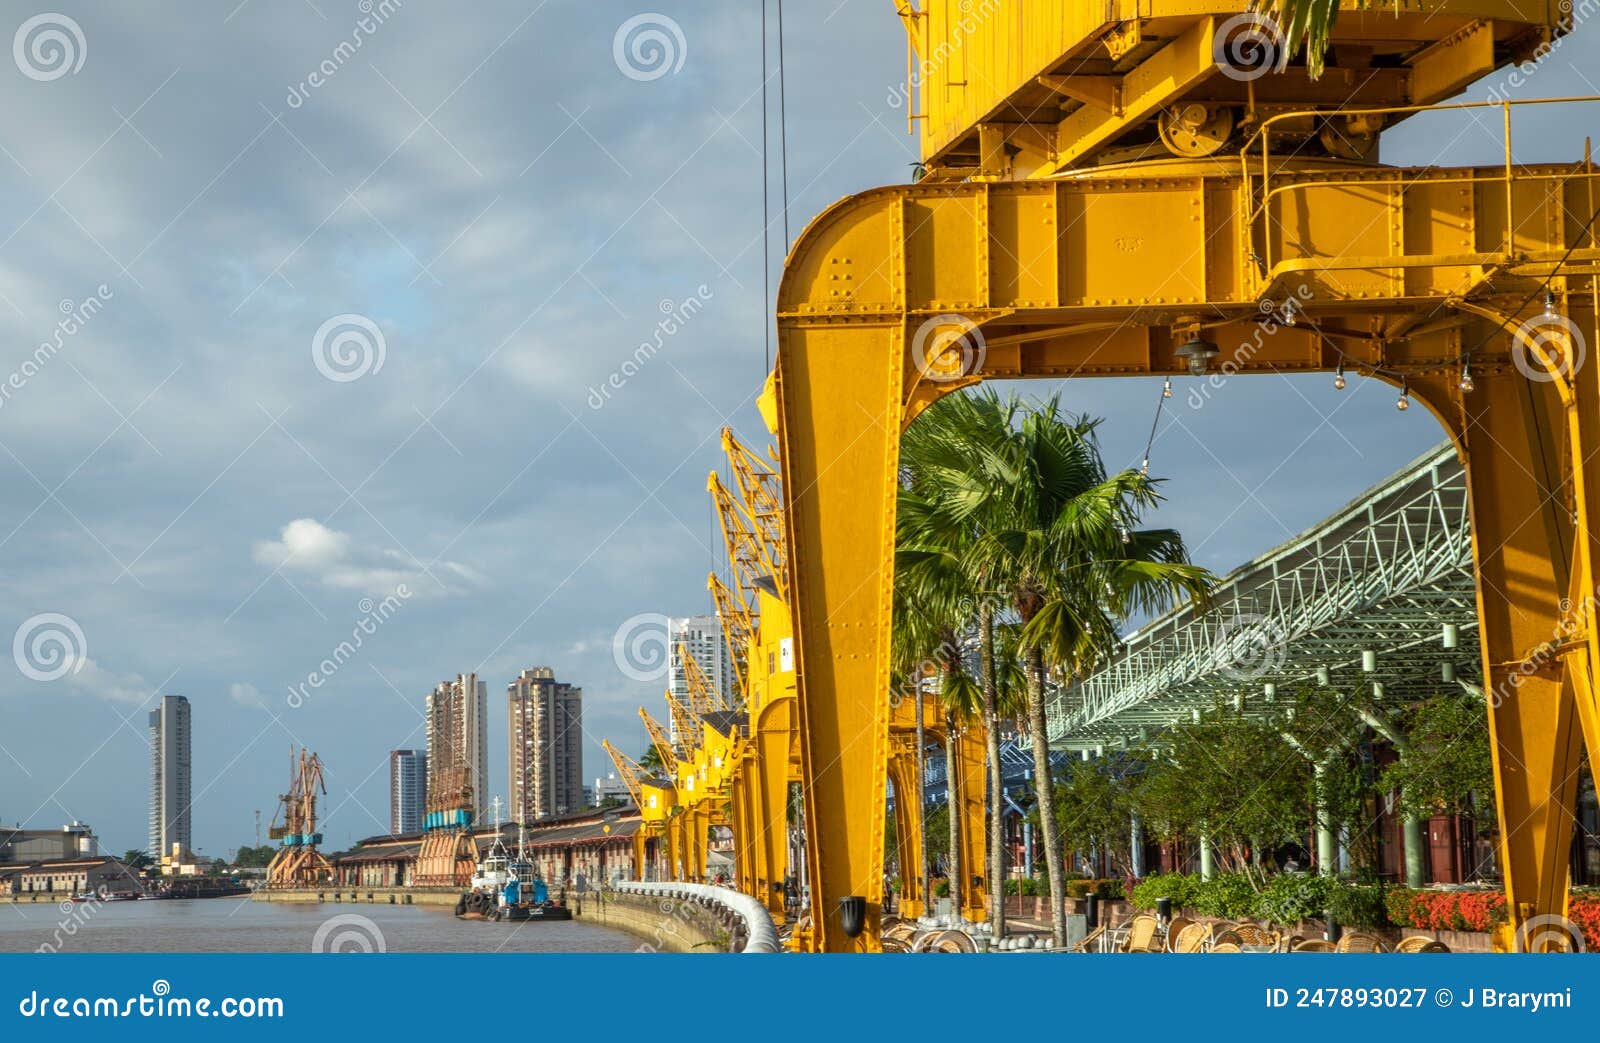 old port yellow cranes at estaÃÂ§ÃÂ£o das docas belÃÂ©m, brazil.